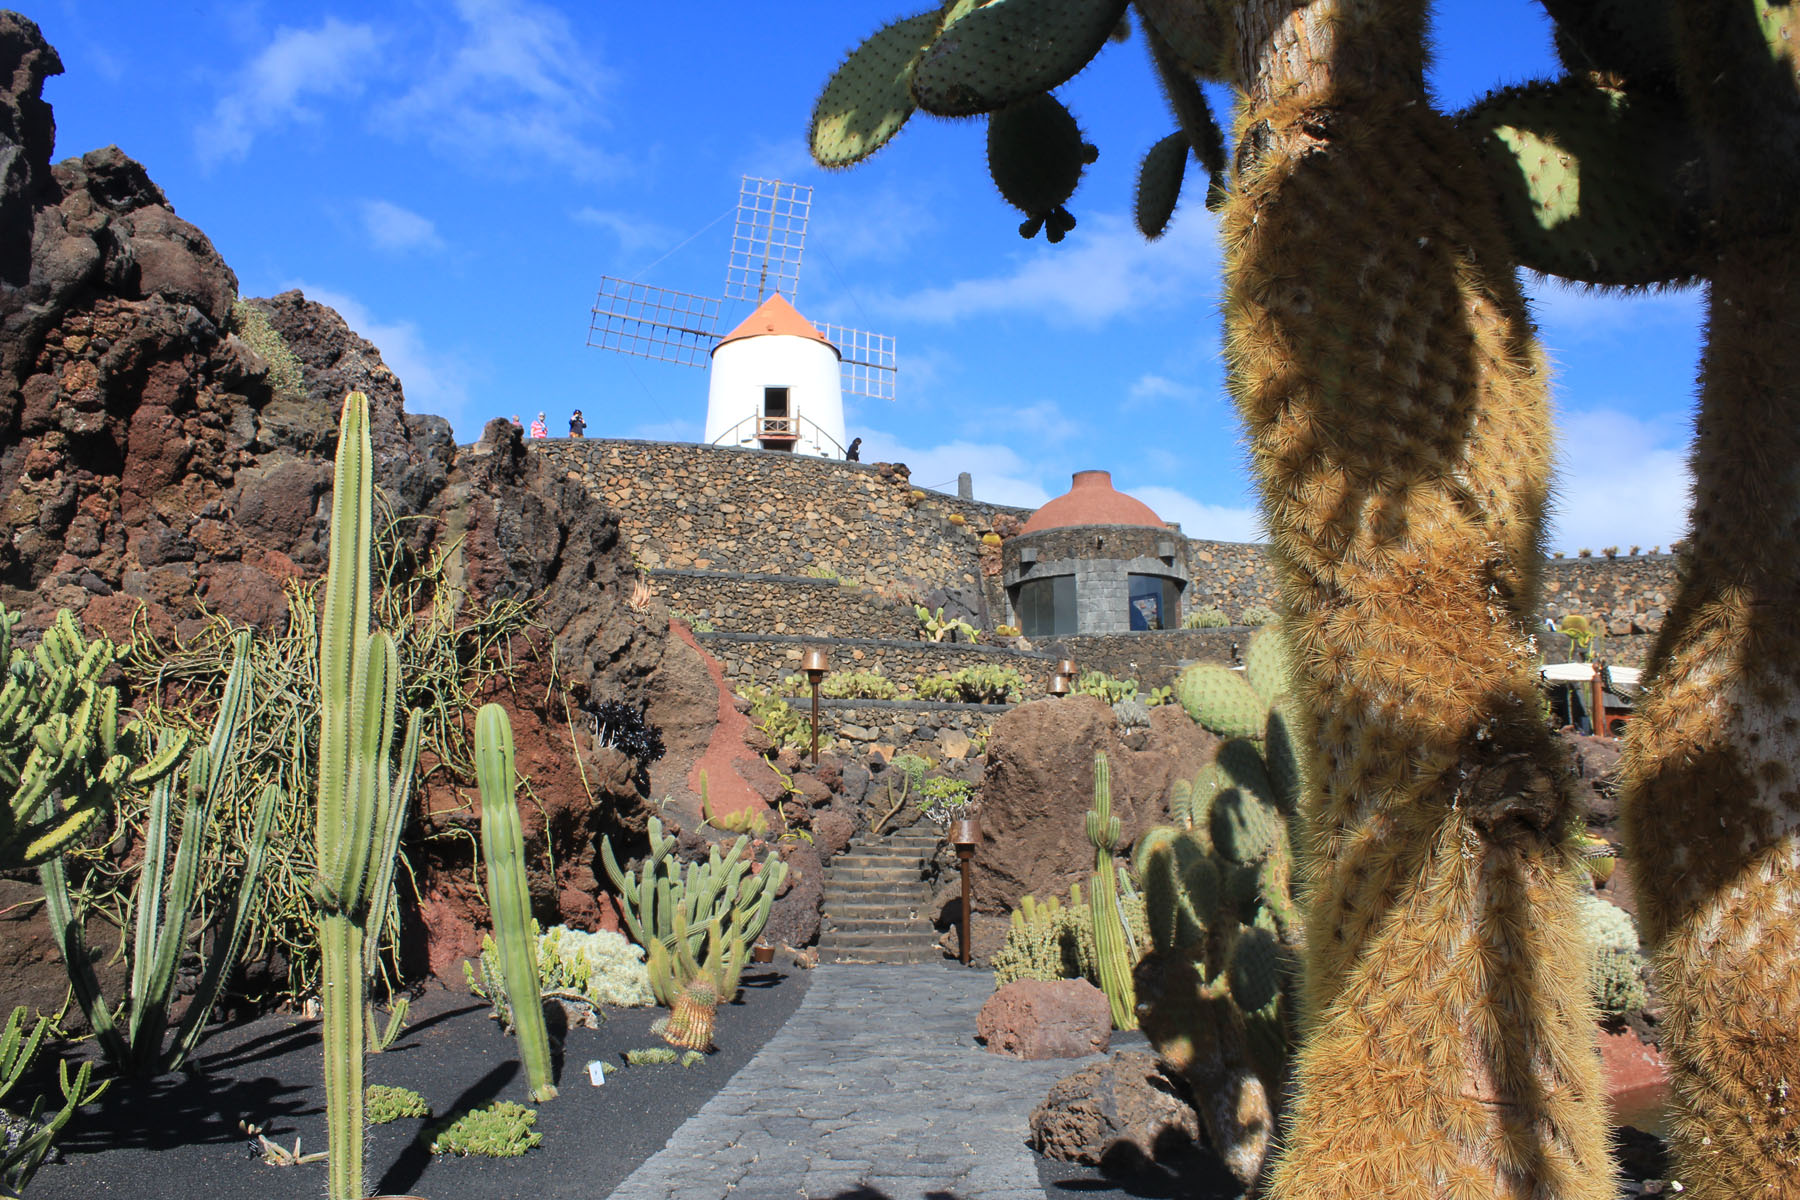 Lanzarote, Guatiza, Jardin de cactus